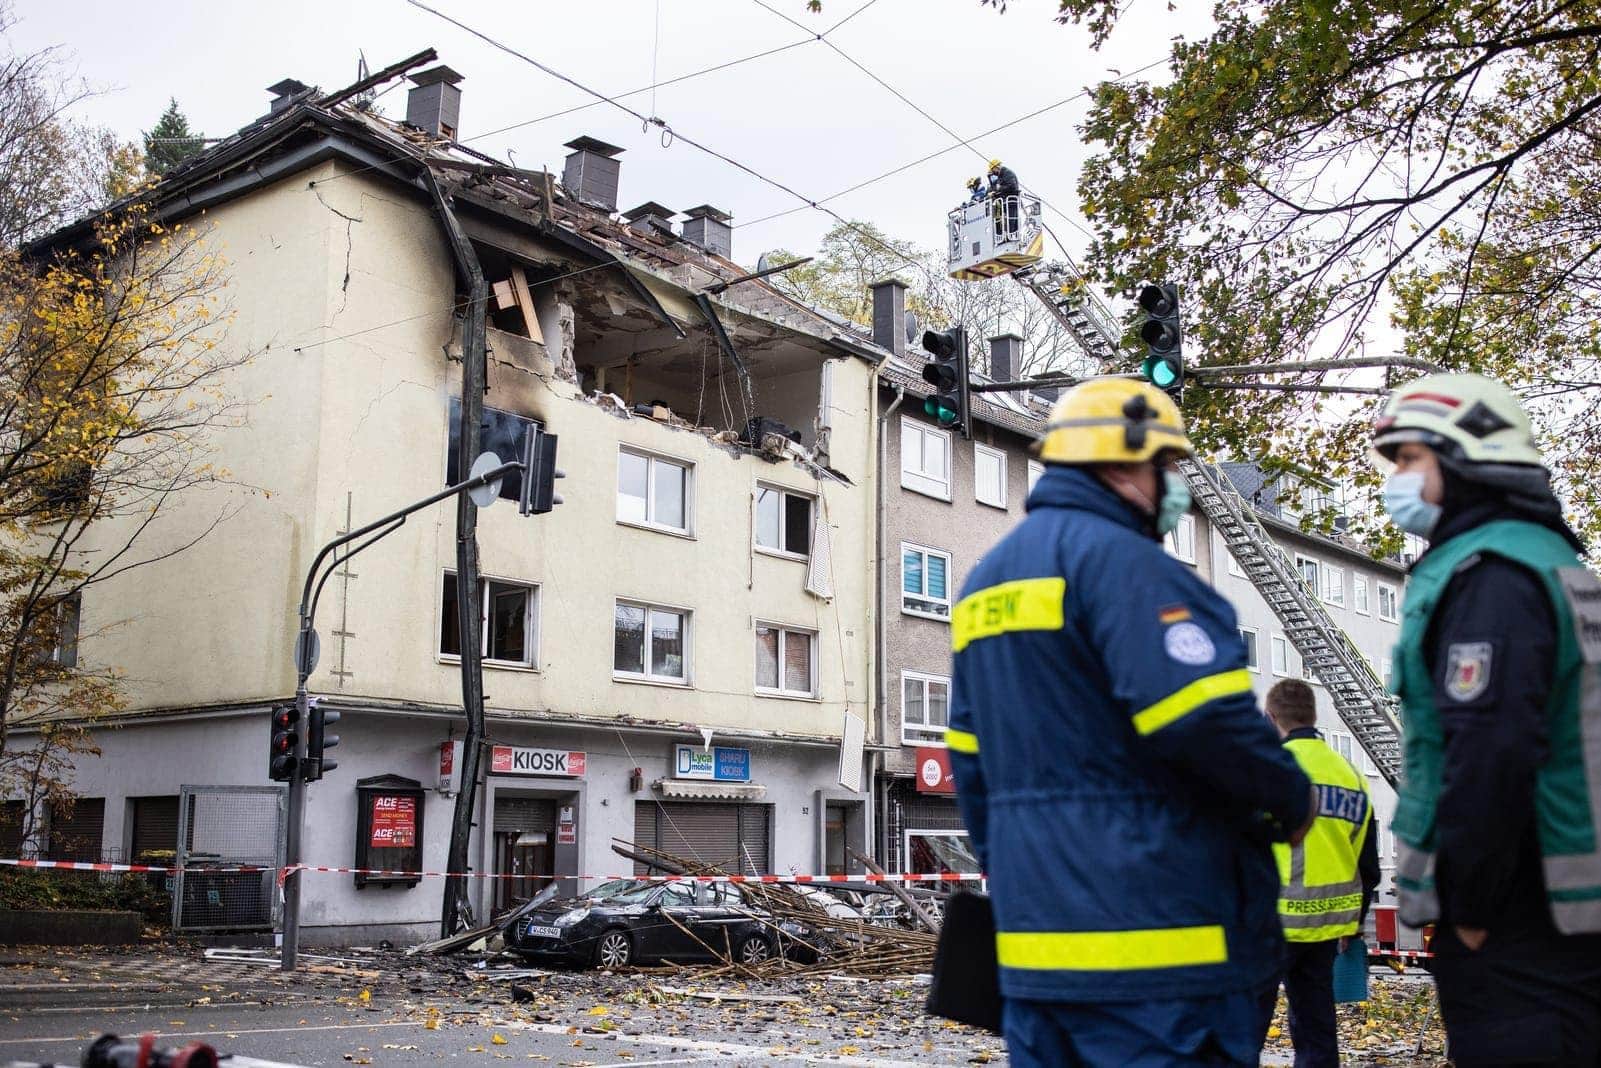 Hausexplosion in Wuppertal - ein Verletzter